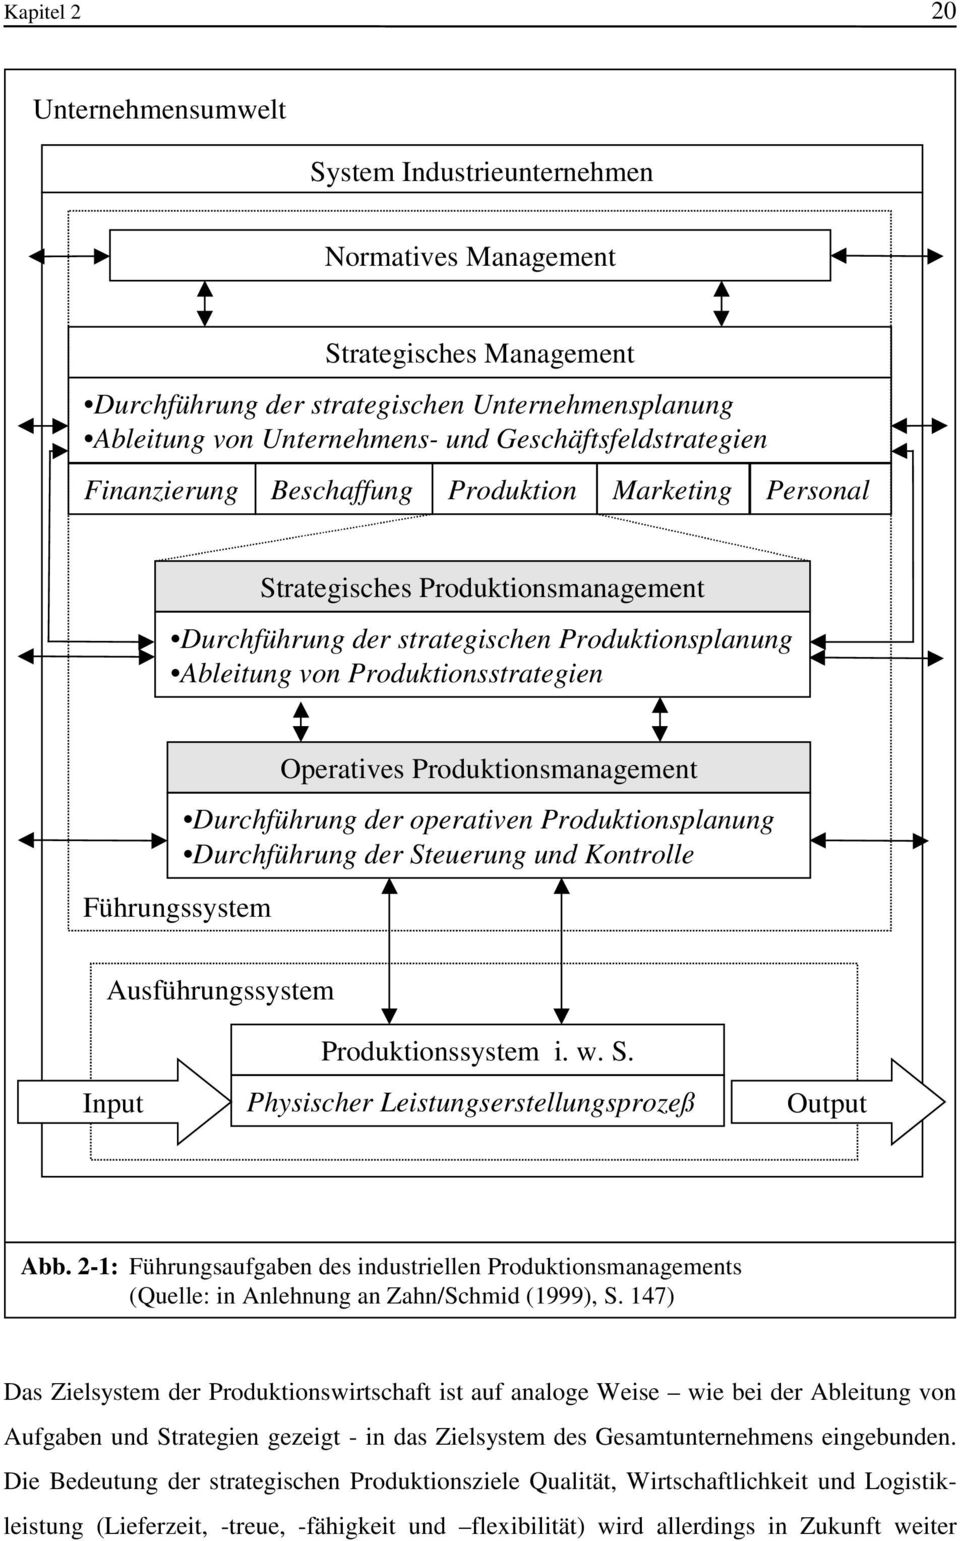 Produktionsstrategien Führungssystem Operatives Produktionsmanagement Durchführung der operativen Produktionsplanung Durchführung der Steuerung und Kontrolle Ausführungssystem Input Produktionssystem